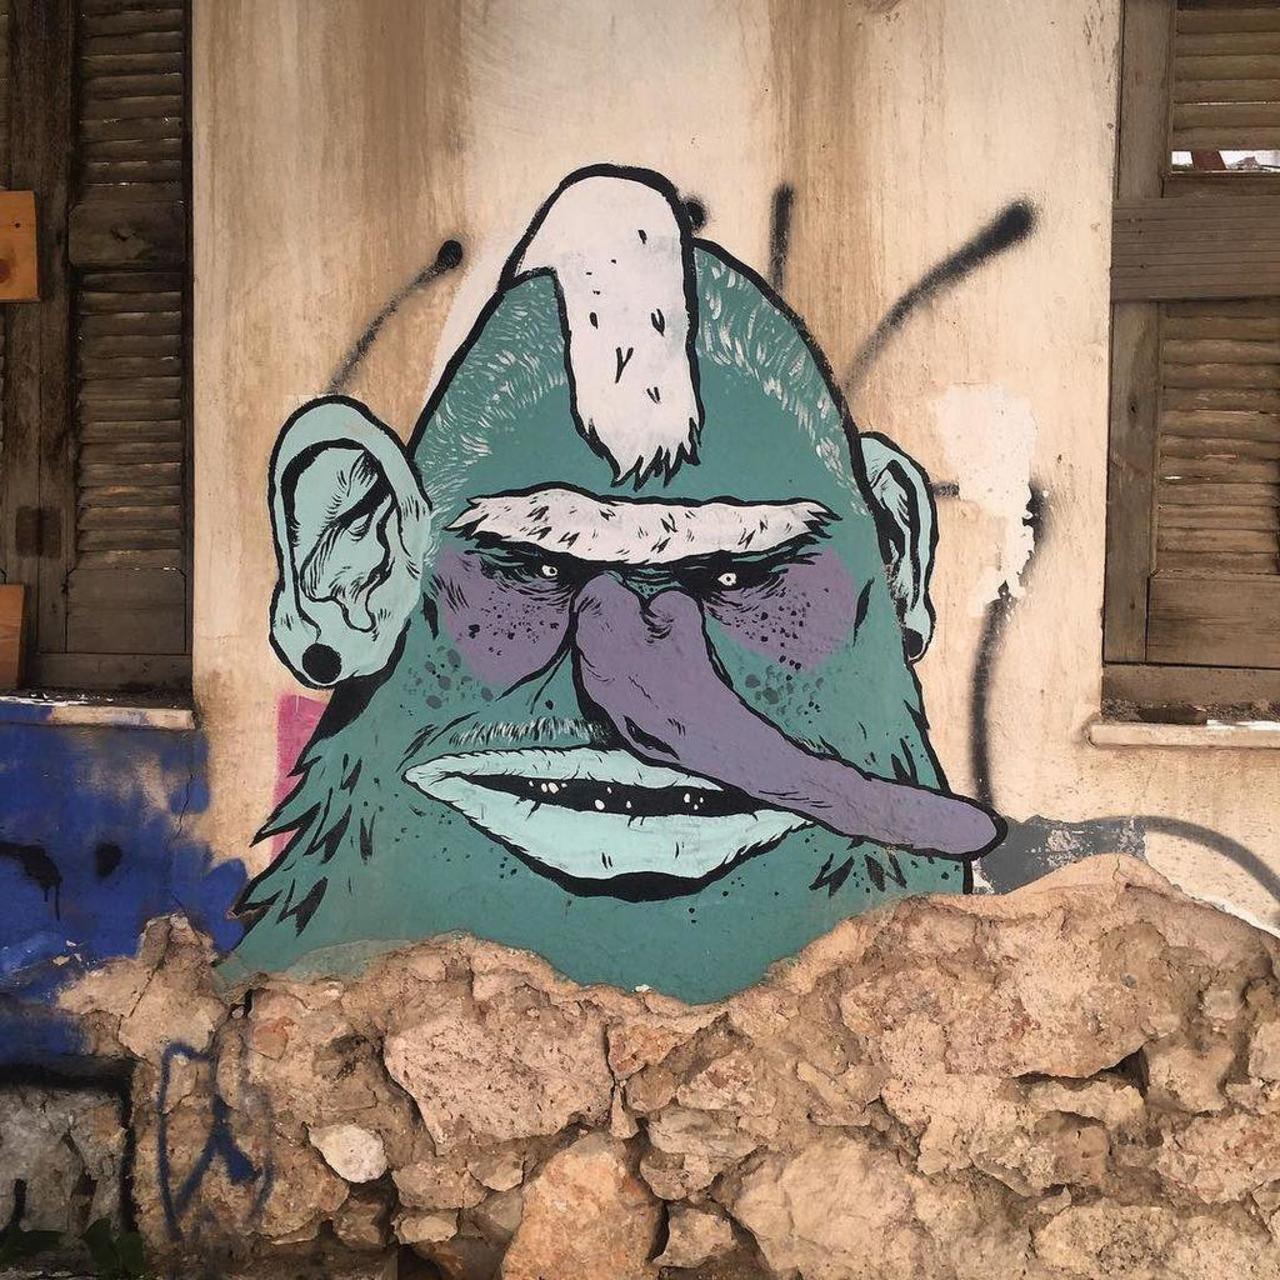 Graffiti Art
Athens, Greece
#graff #graffiti #graffitiathens #outsider #outsiderart #street #streetart #streetartat… http://t.co/tN7BIZ4X2t